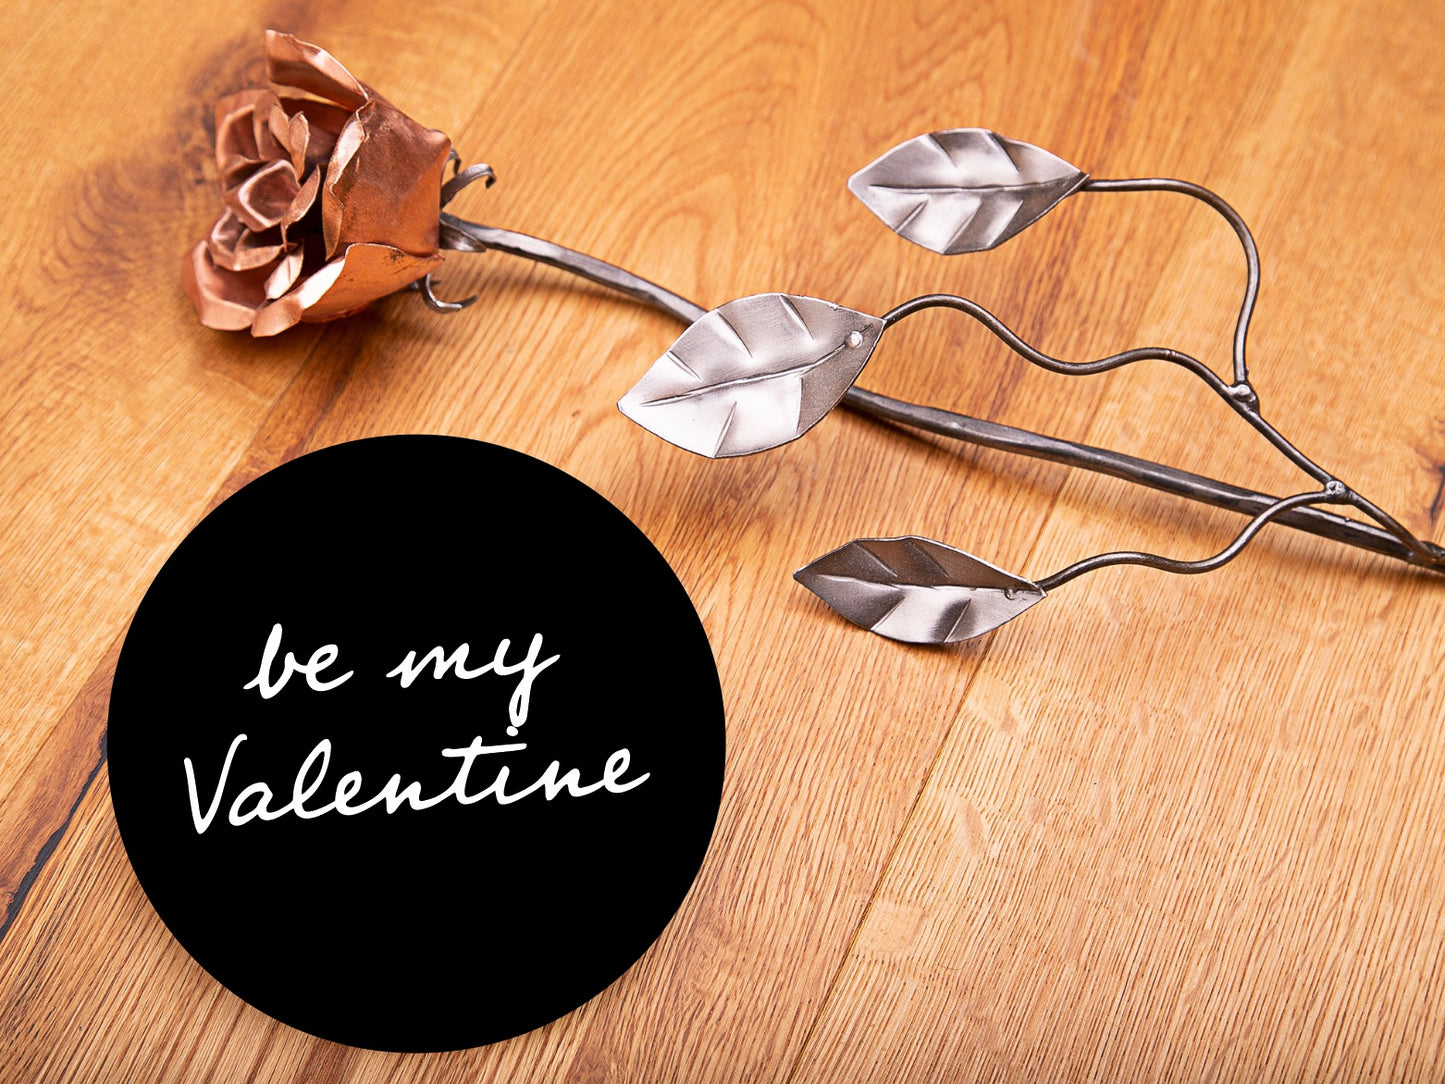 geschmiedete Rose, 50cm mit Kupferblätter (zum Valentinstag / Muttertag)